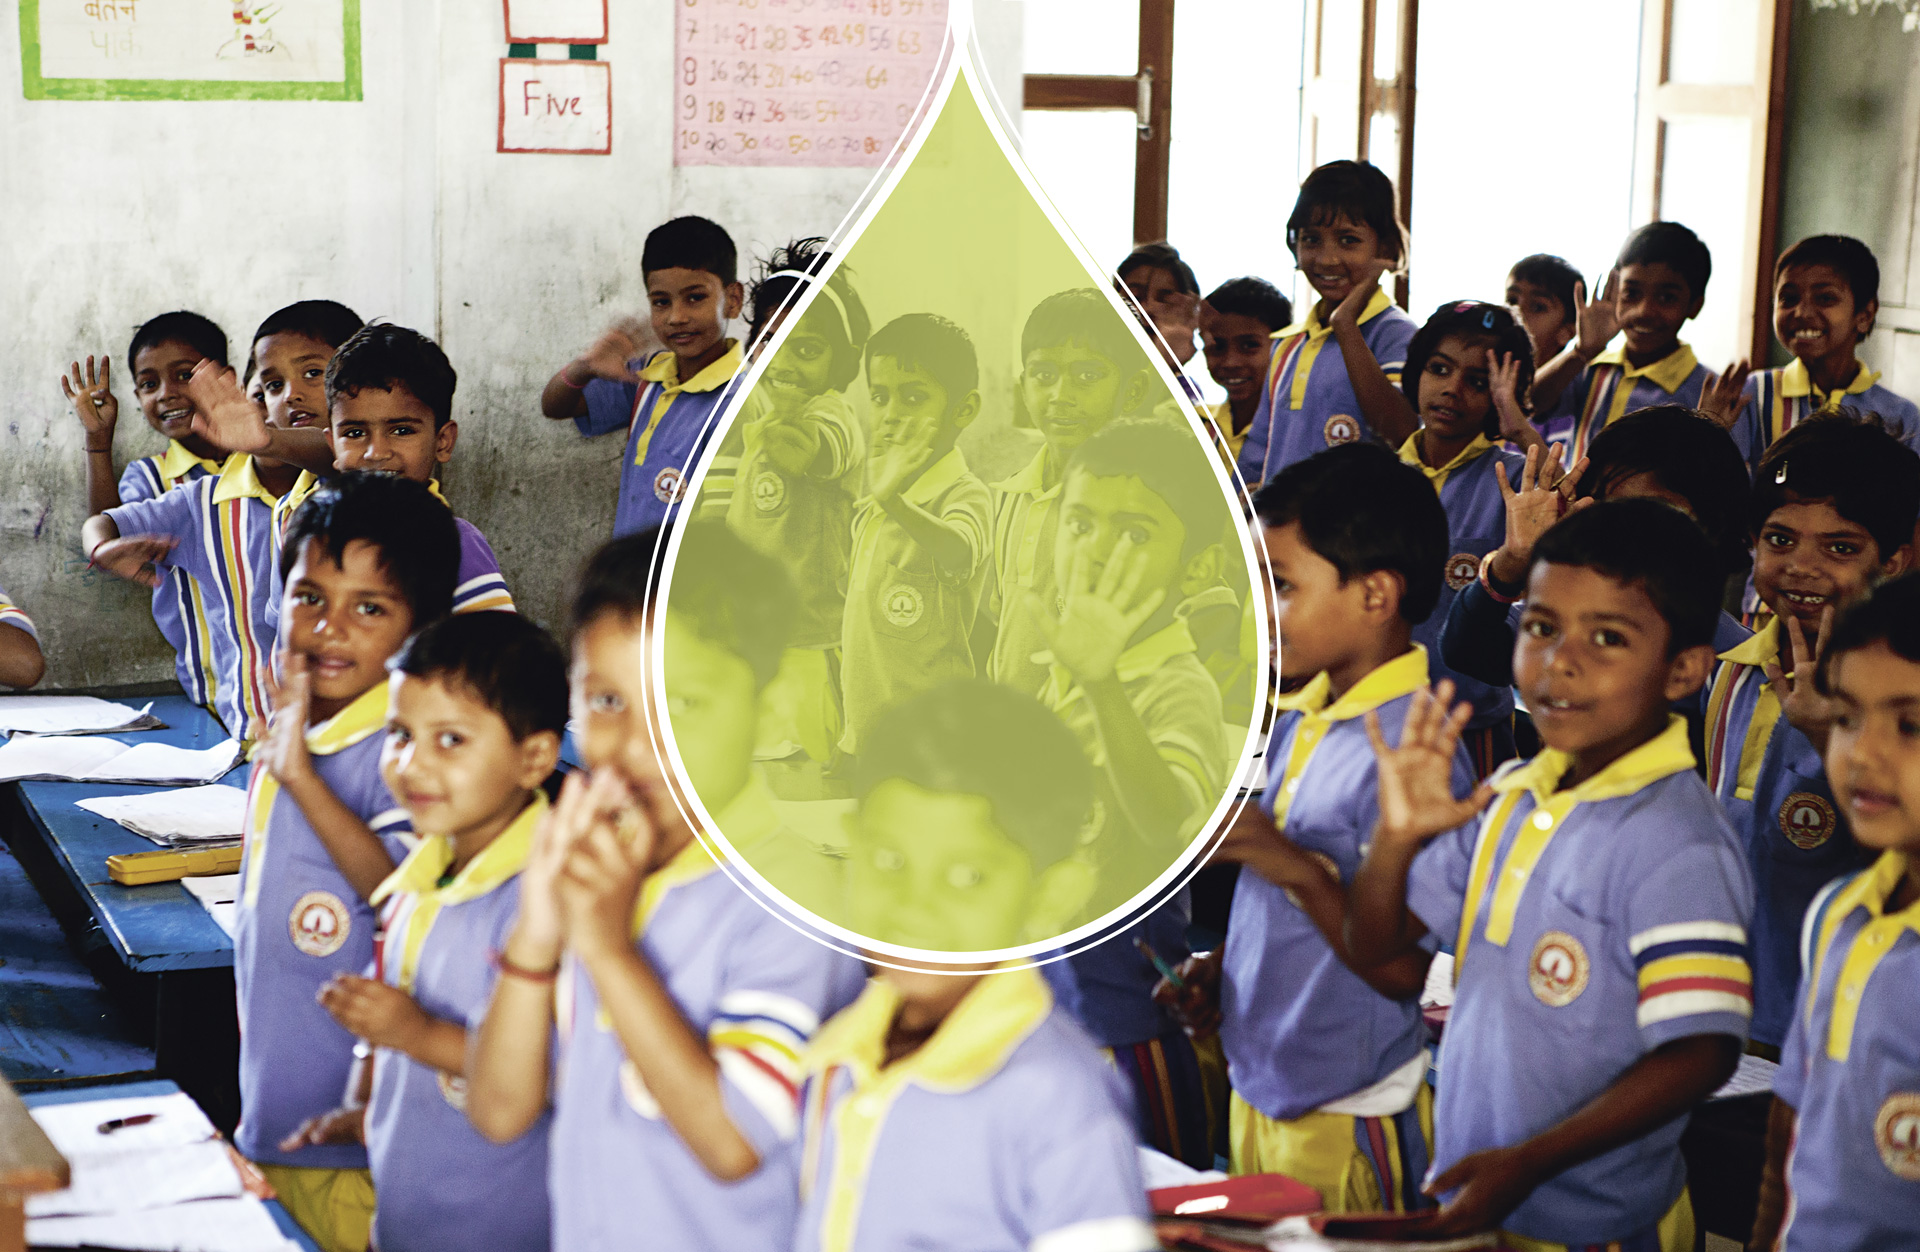 Der Verein Light of Love unterstützt eine Integrationsschule in Nordindien